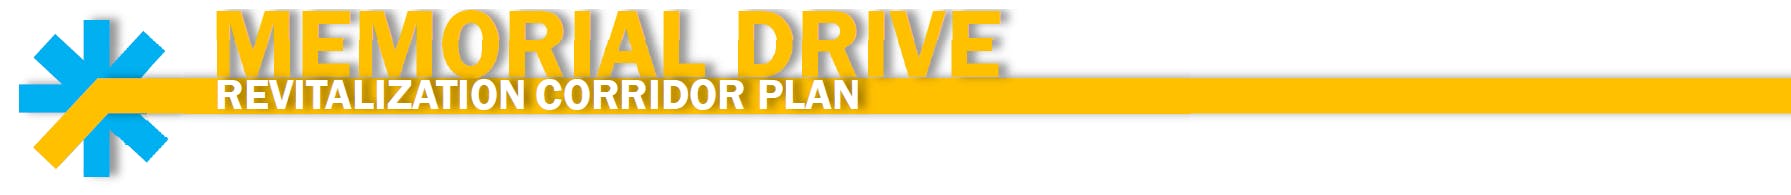 Memorial Drive Revitalization Corridor Plan banner